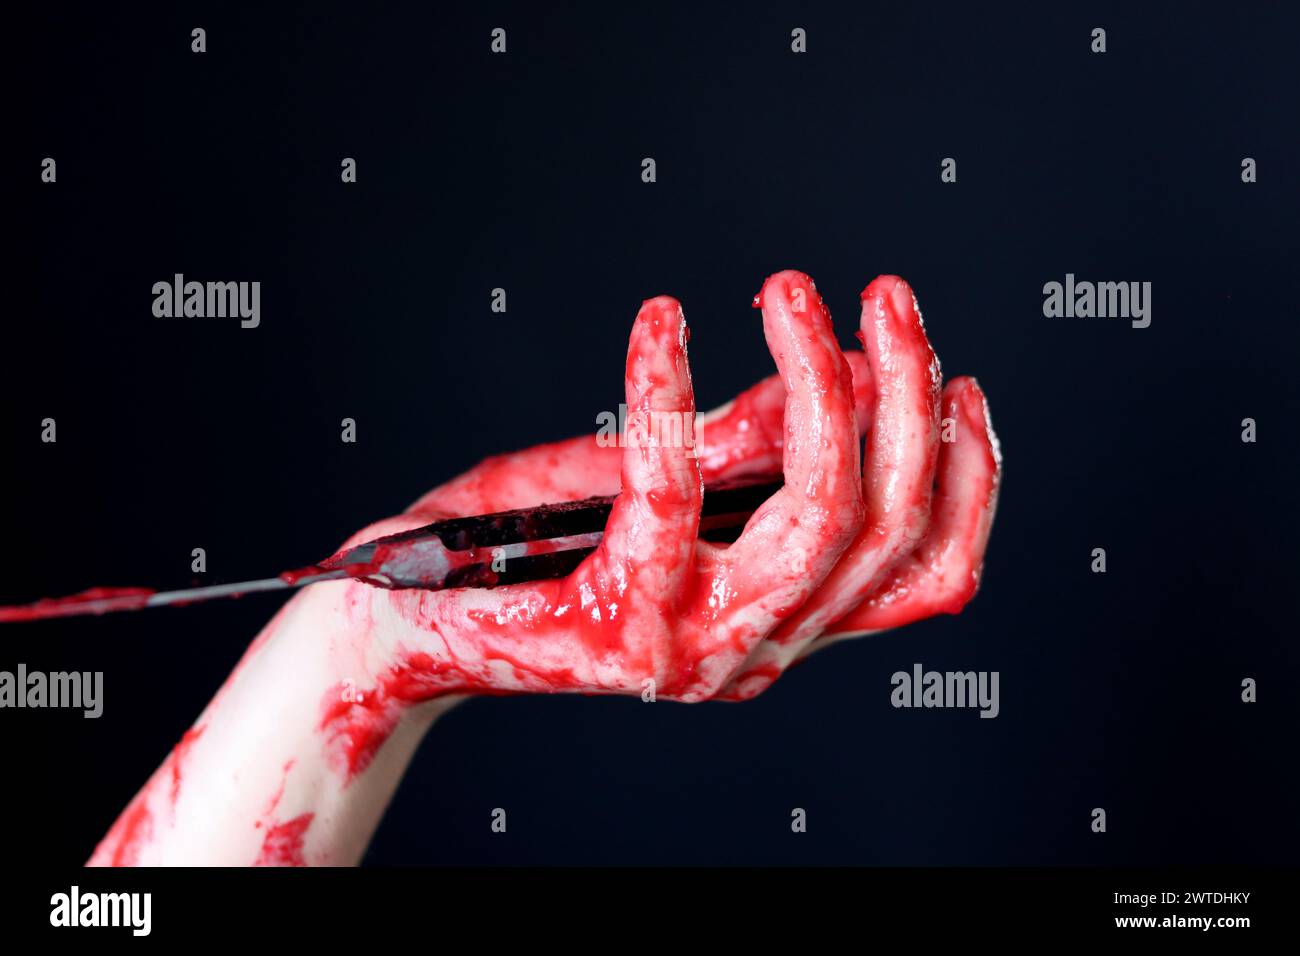 Main sanglante tenant un couteau avec du sang sur un fond noir. Violence domestique Abuse concept de meurtre Banque D'Images